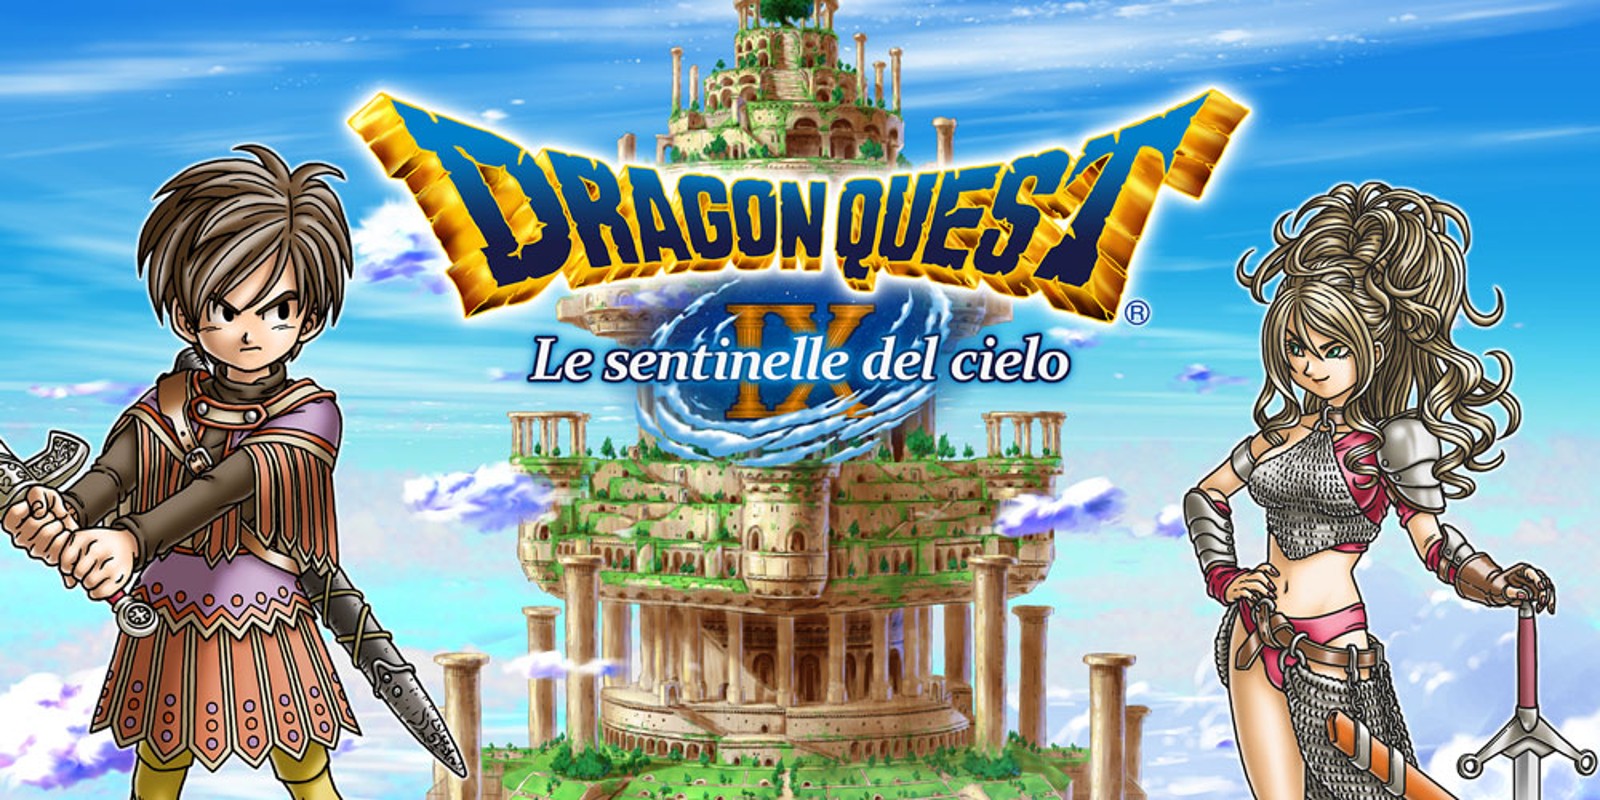 Dragon Quest IX, vedremo presto una versione per Nintendo Switch?